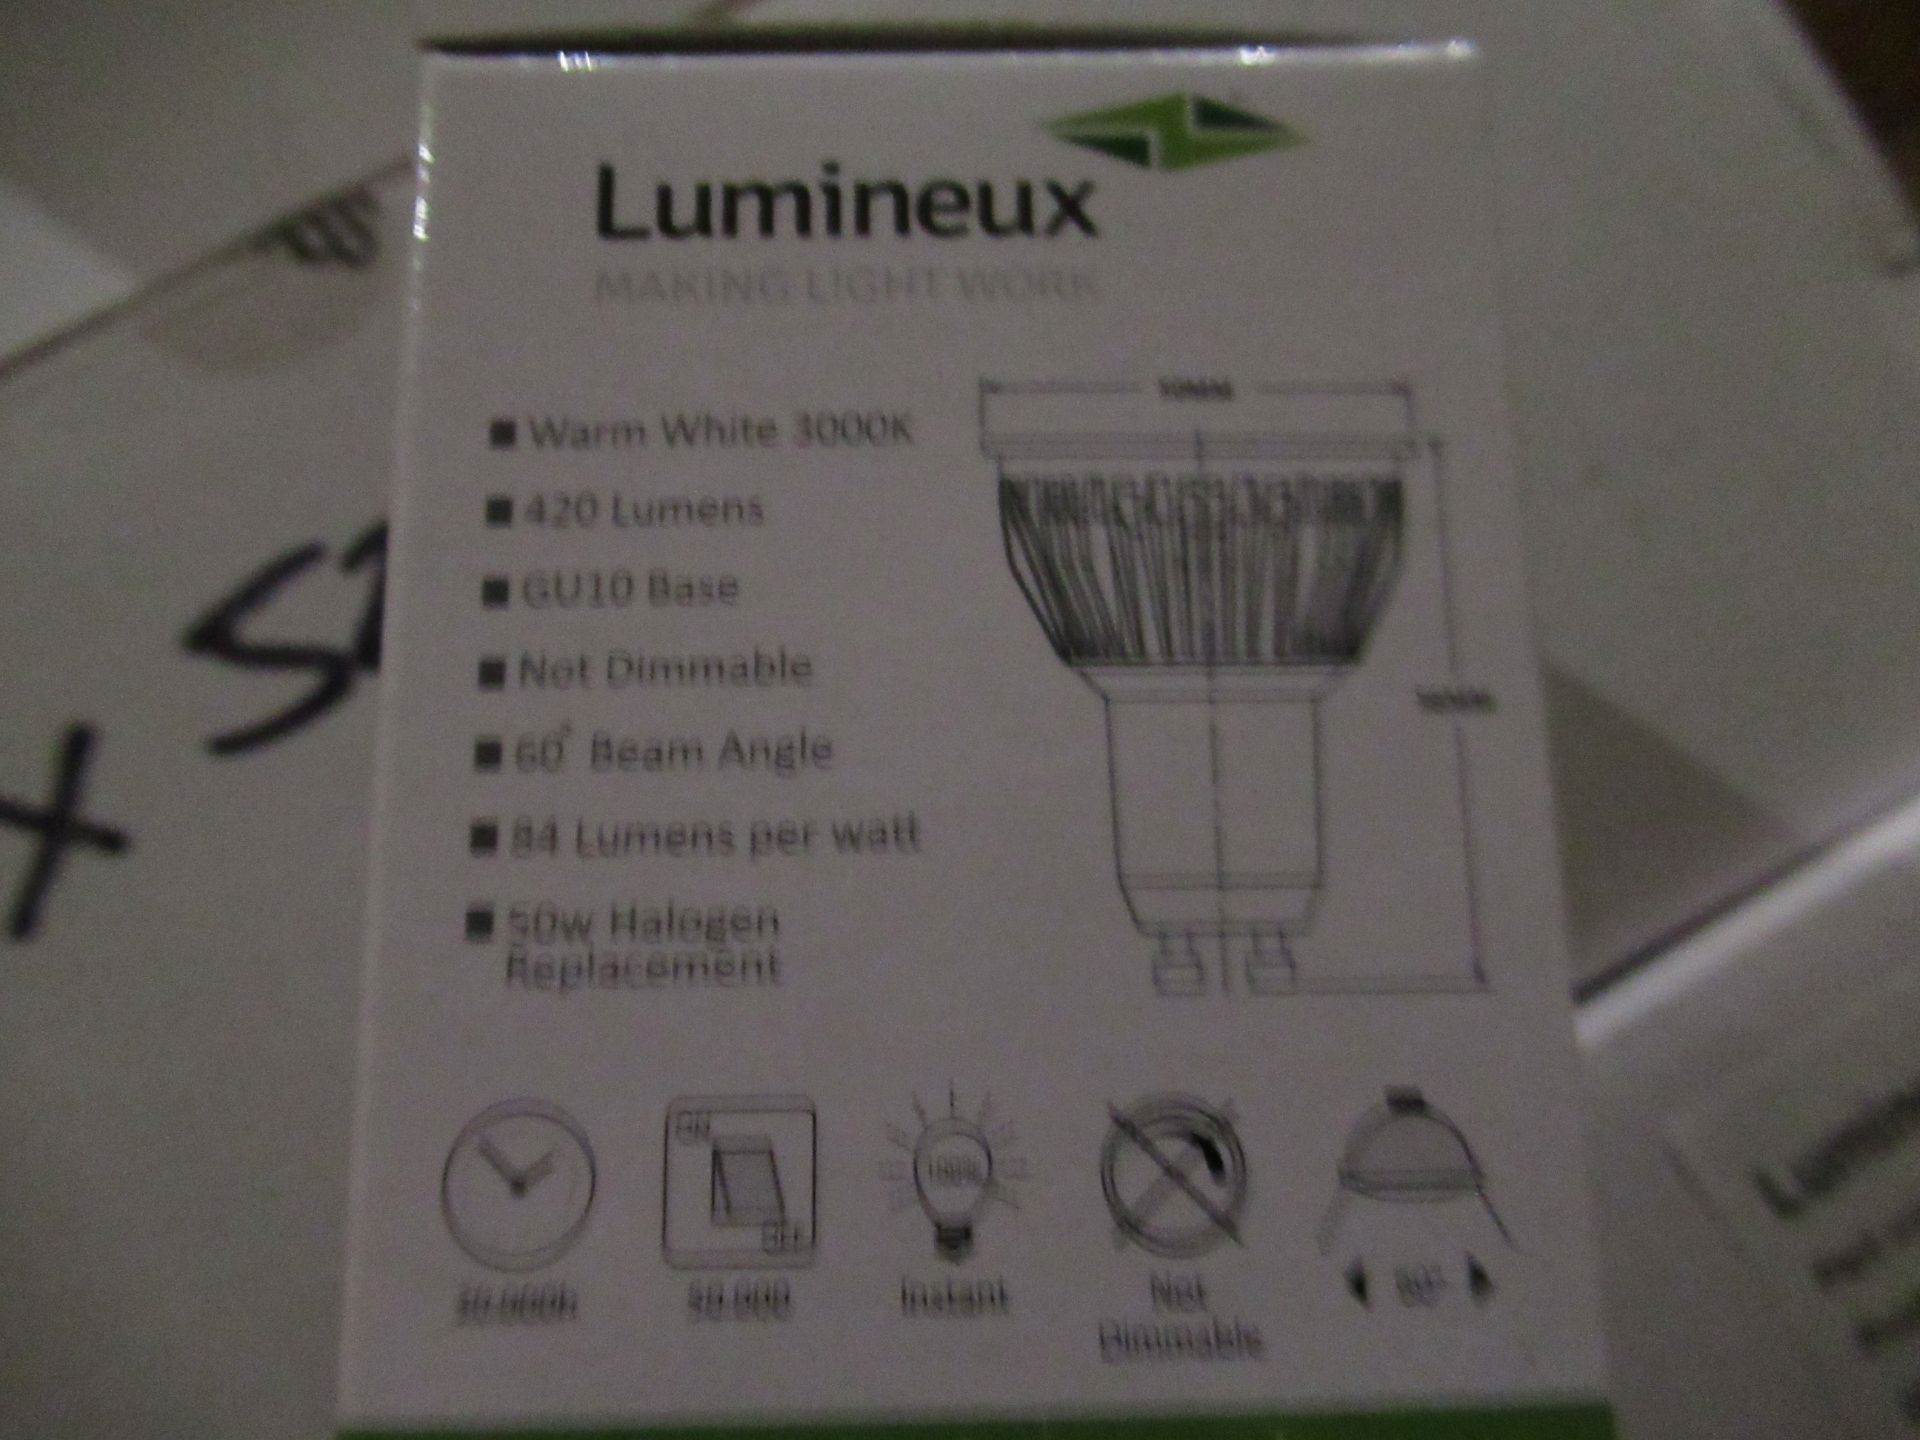 10 x 10 Lumineux LED GU10 SMD Plus 5W 3000K - Image 3 of 4